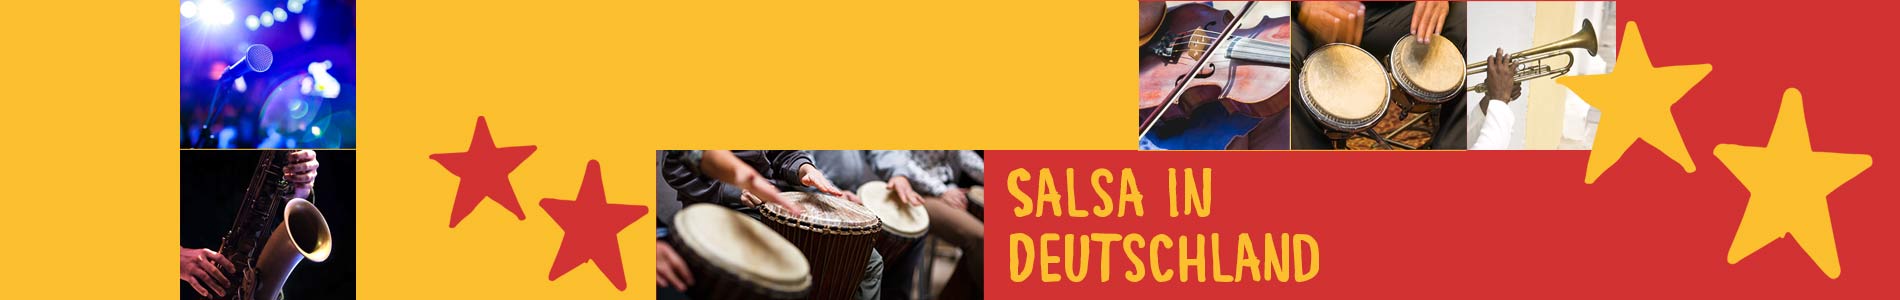 Salsa in Carpin – Salsa lernen und tanzen, Tanzkurse, Partys, Veranstaltungen